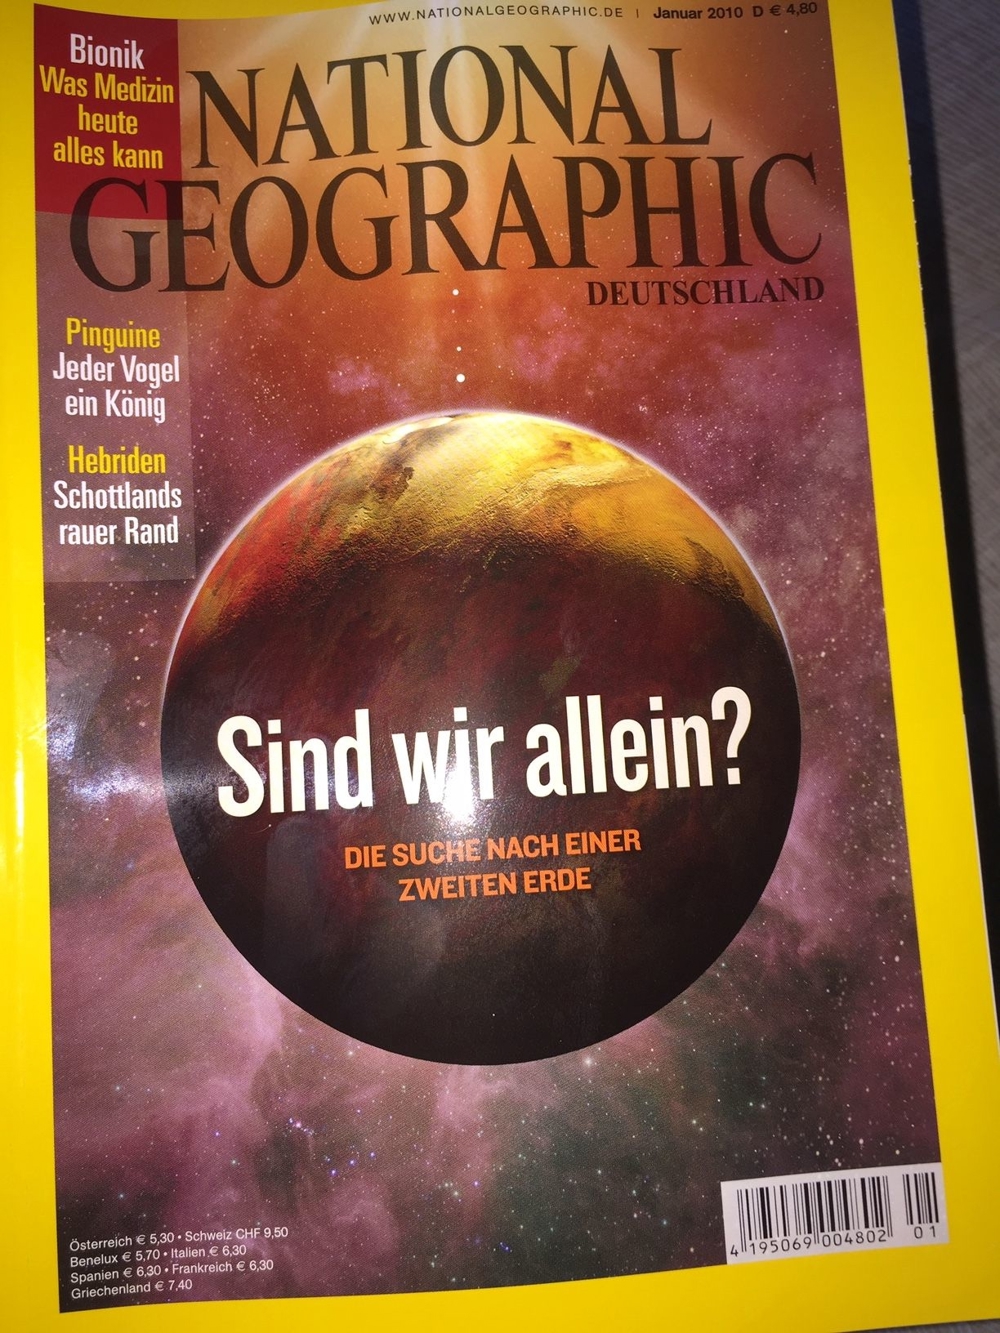 National Geographic in Deutsch